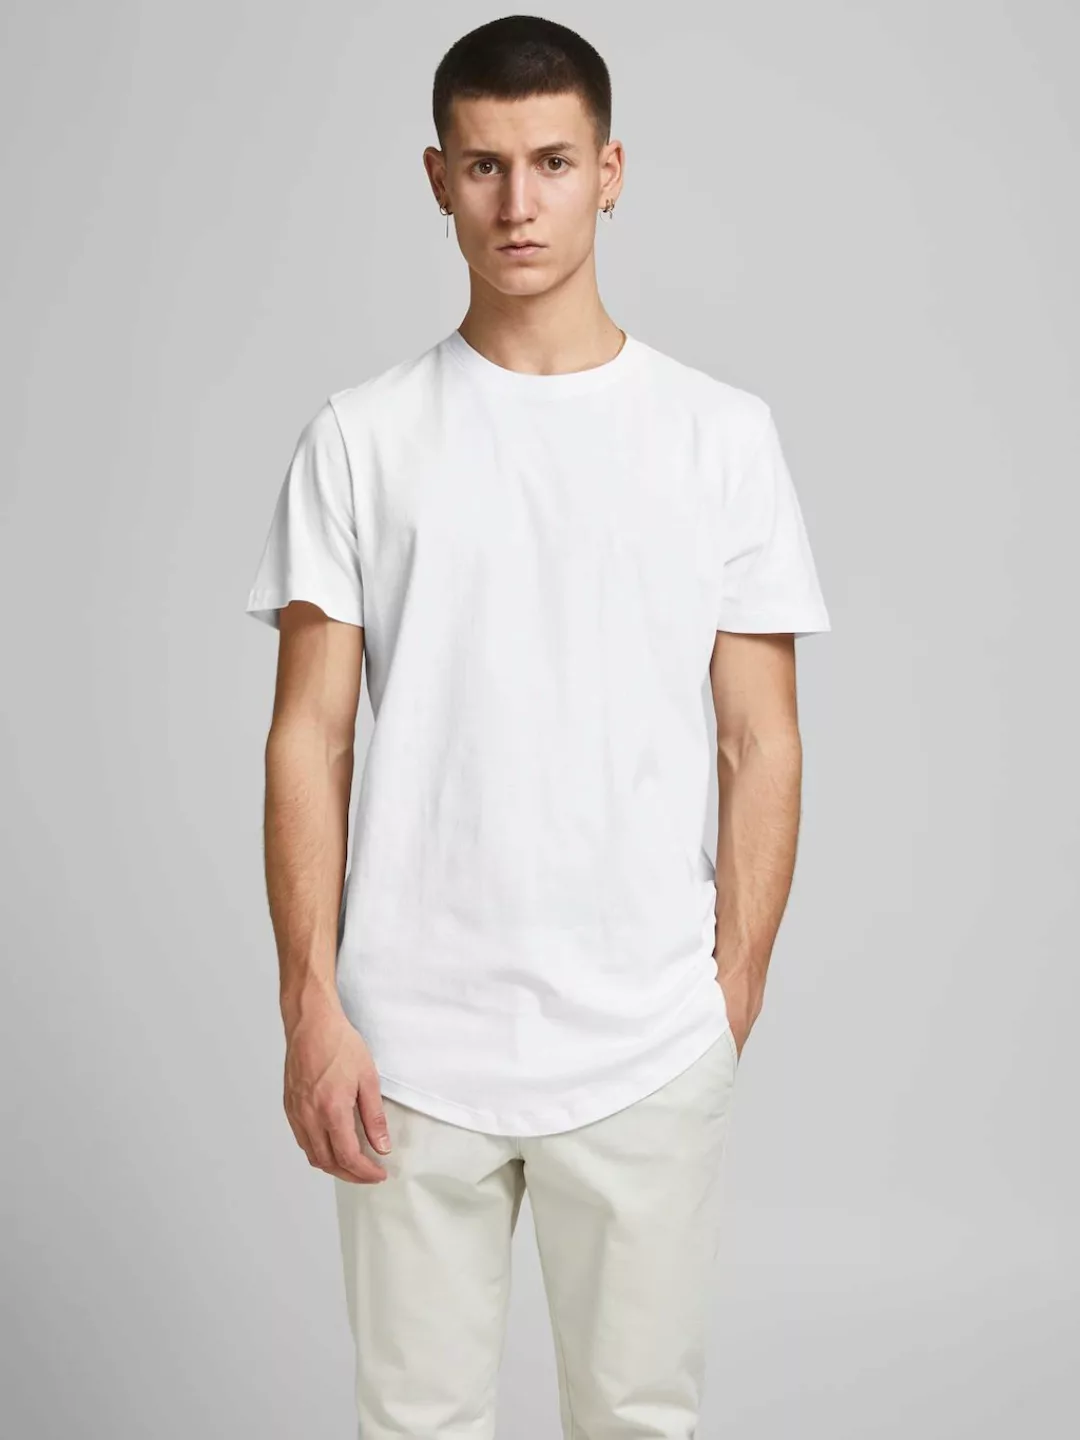 Jack & Jones Herren Rundhals T-Shirt JJEORGANIC BASIC 3er PACK - Slim Fit günstig online kaufen